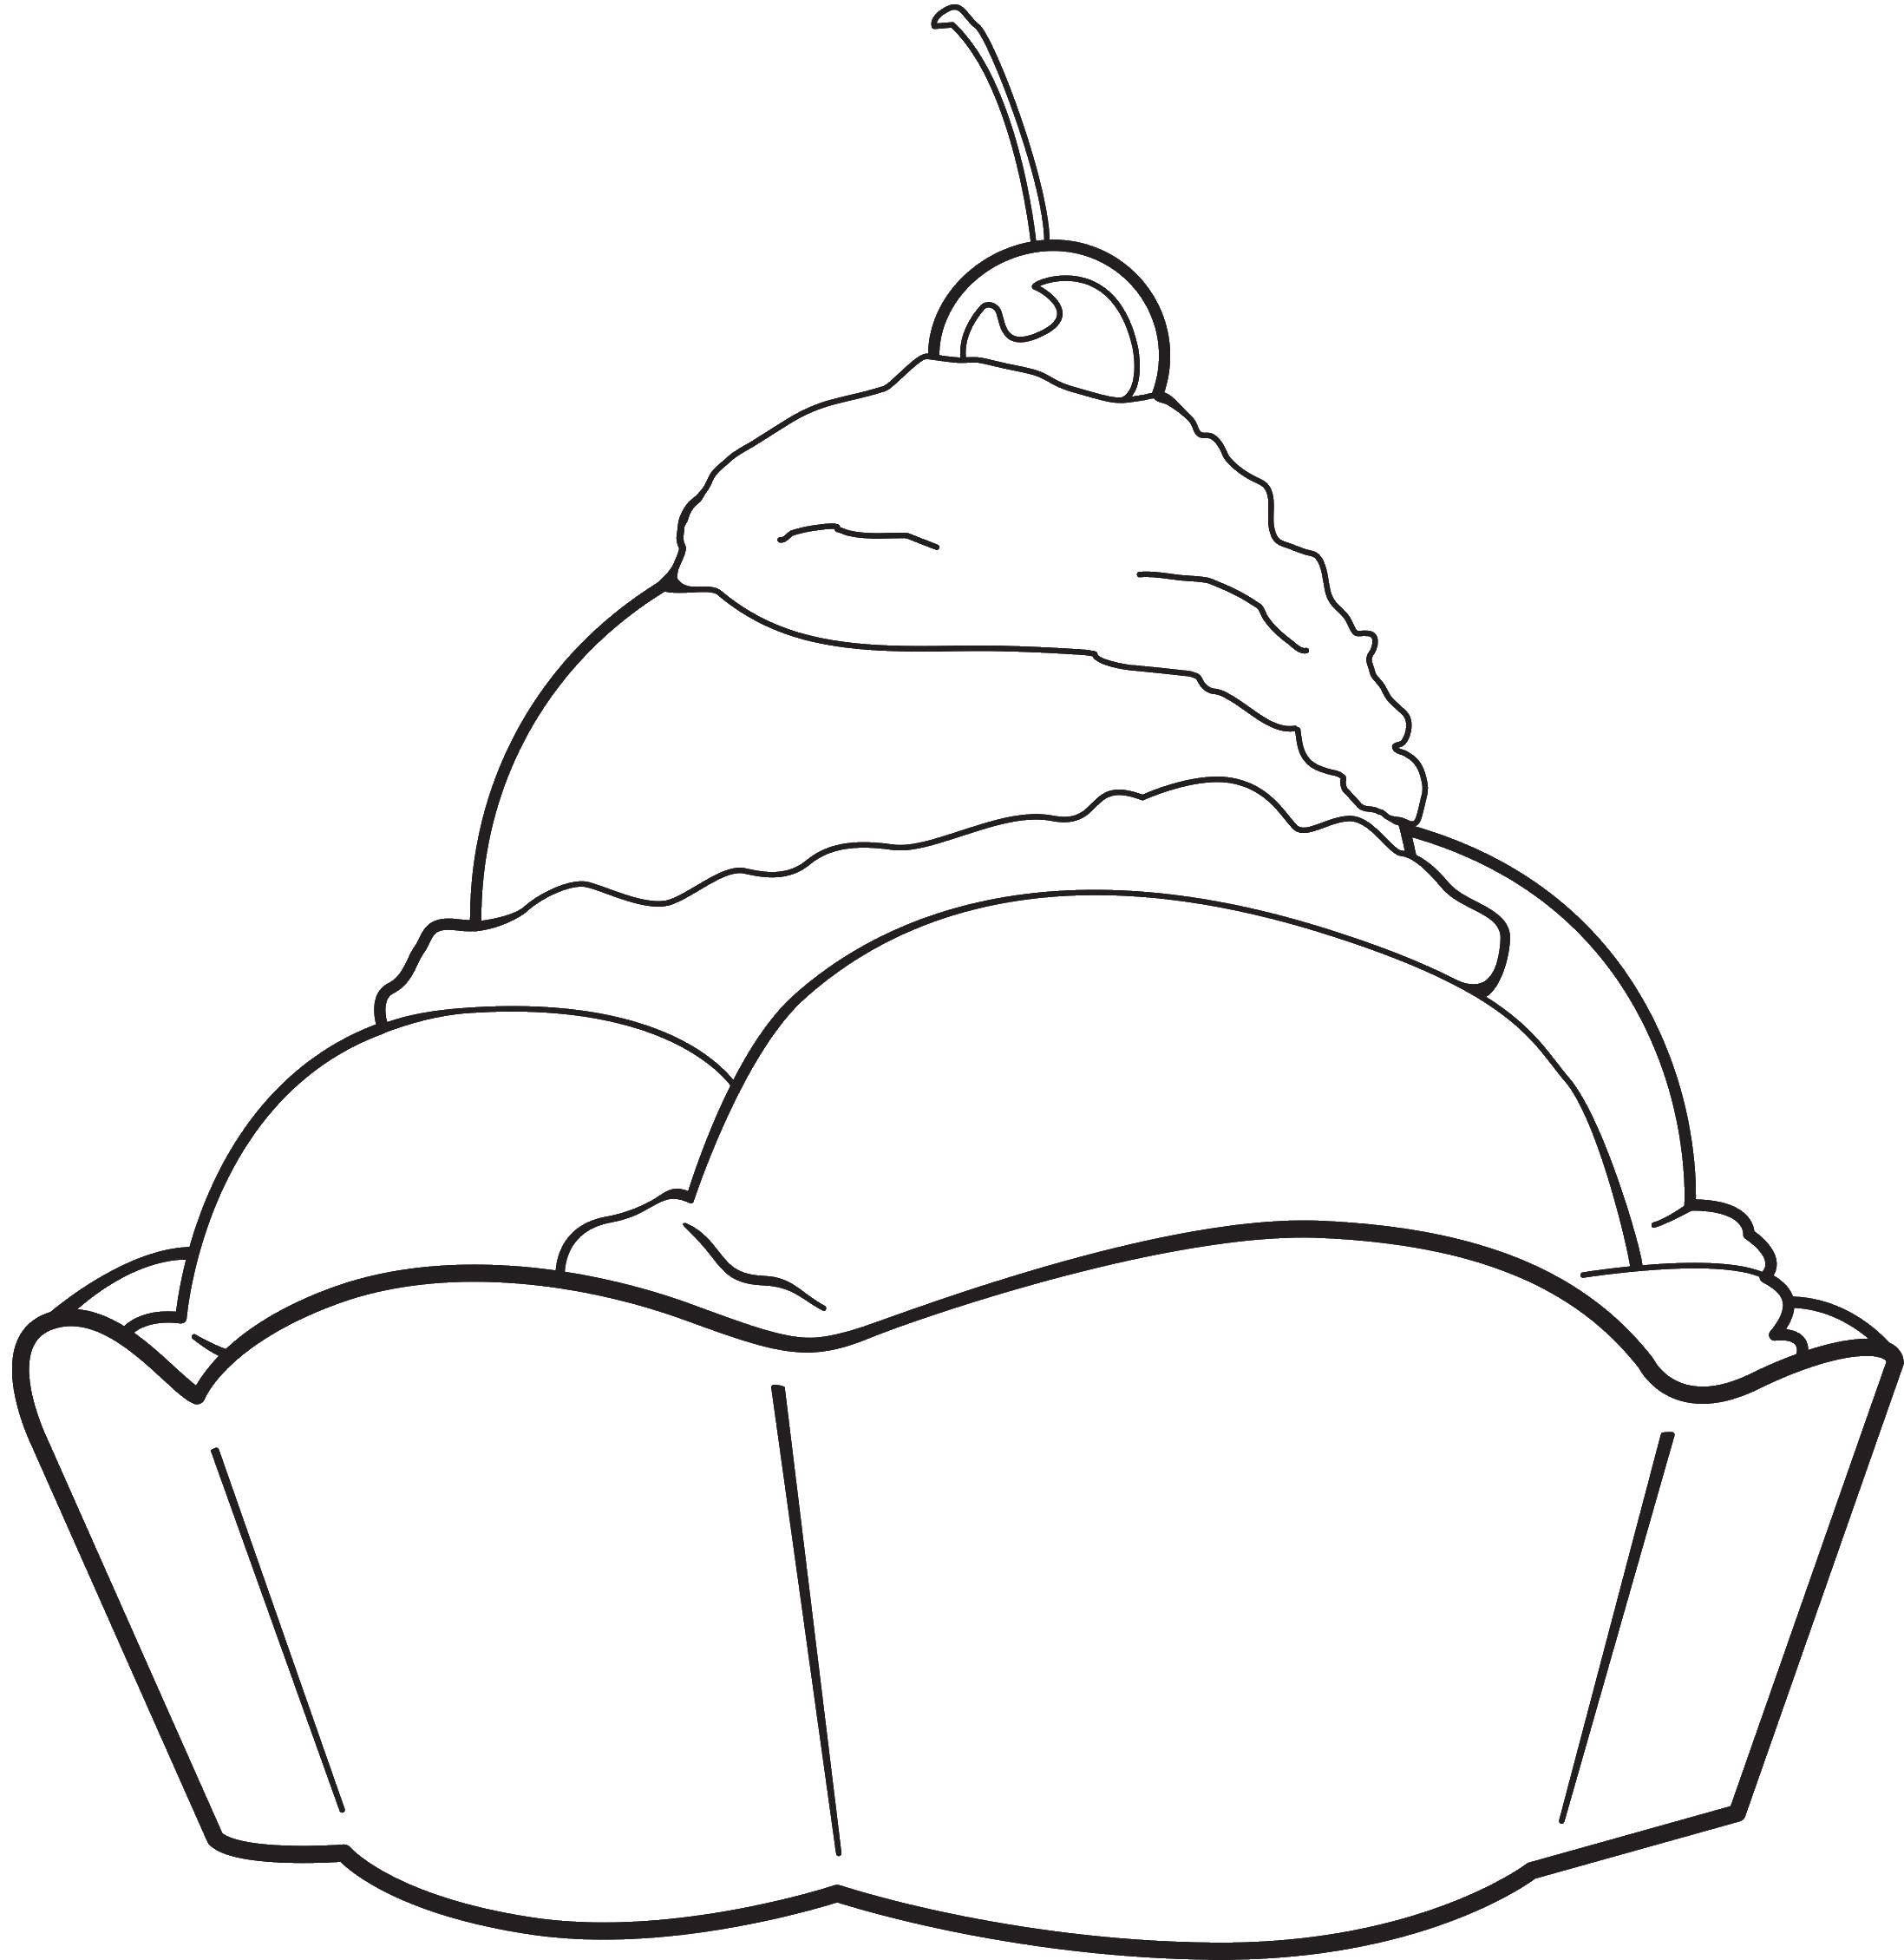 Coloring Тарелка с мороженым с вишенькой. Category мороженое. Tags:  мороженое, шариковое мороженое.